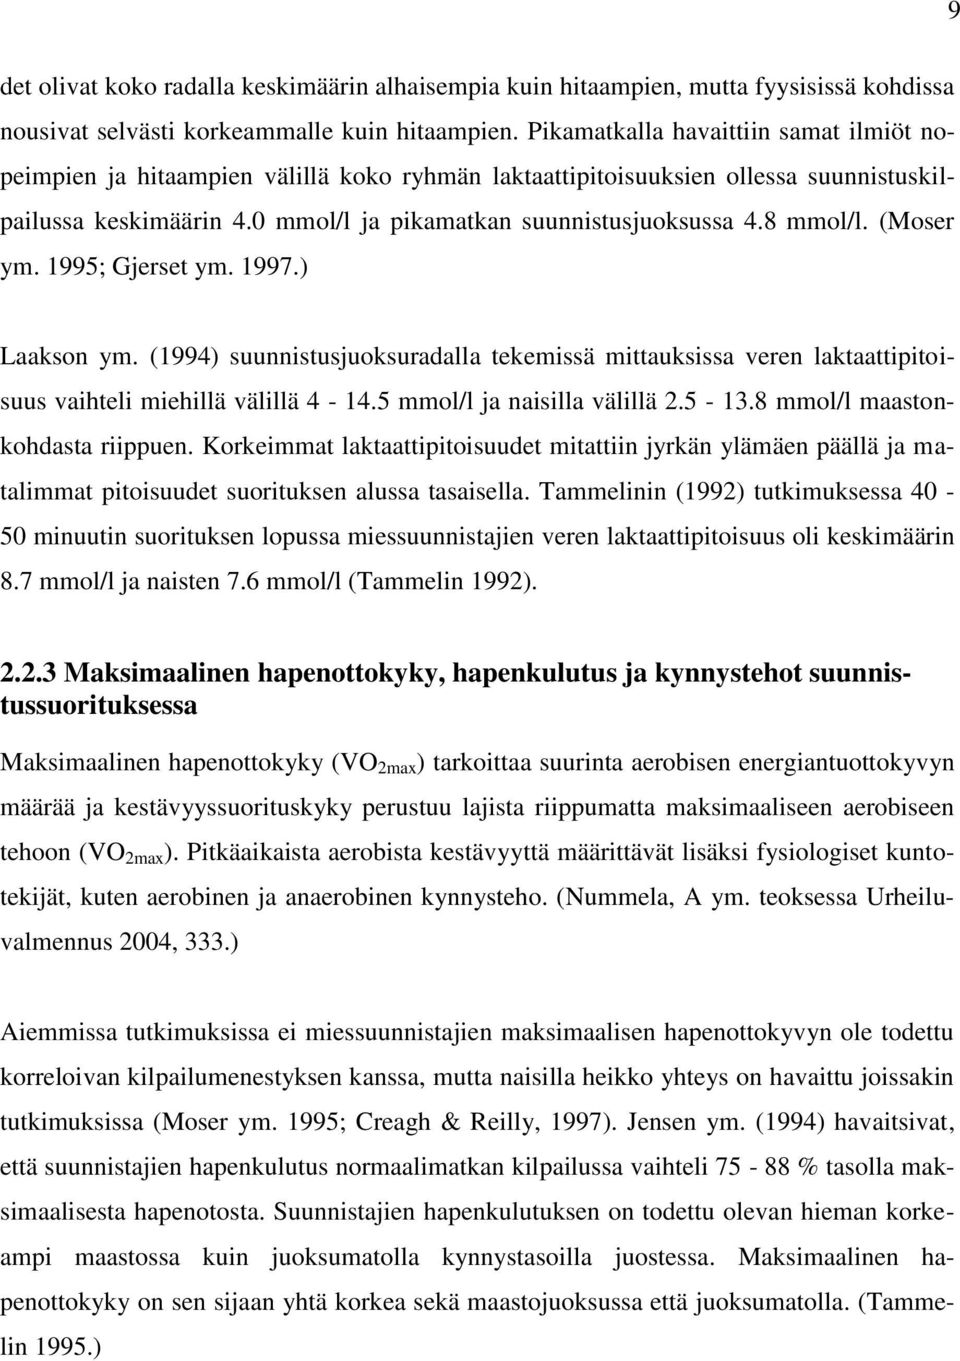 8 mmol/l. (Moser ym. 1995; Gjerset ym. 1997.) Laakson ym. (1994) suunnistusjuoksuradalla tekemissä mittauksissa veren laktaattipitoisuus vaihteli miehillä välillä 4-14.5 mmol/l ja naisilla välillä 2.